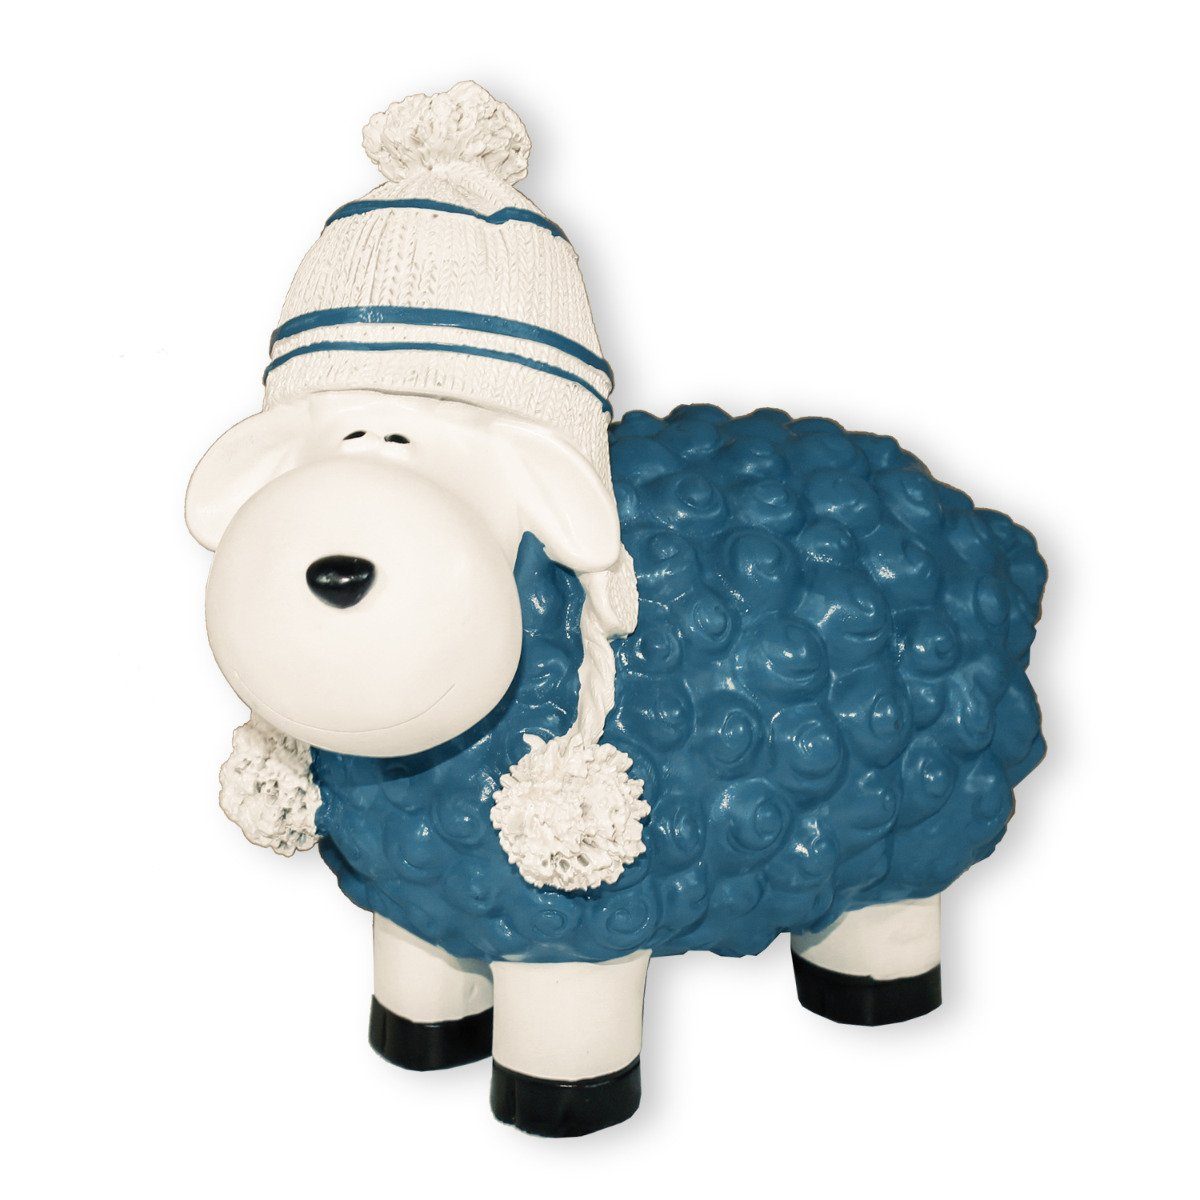 blau mit Schaf, Mütze colourliving Buntes Schaf Gartenfigur Deko Dekofigur lustiges Handbemalt, Wetterfest, Schaf